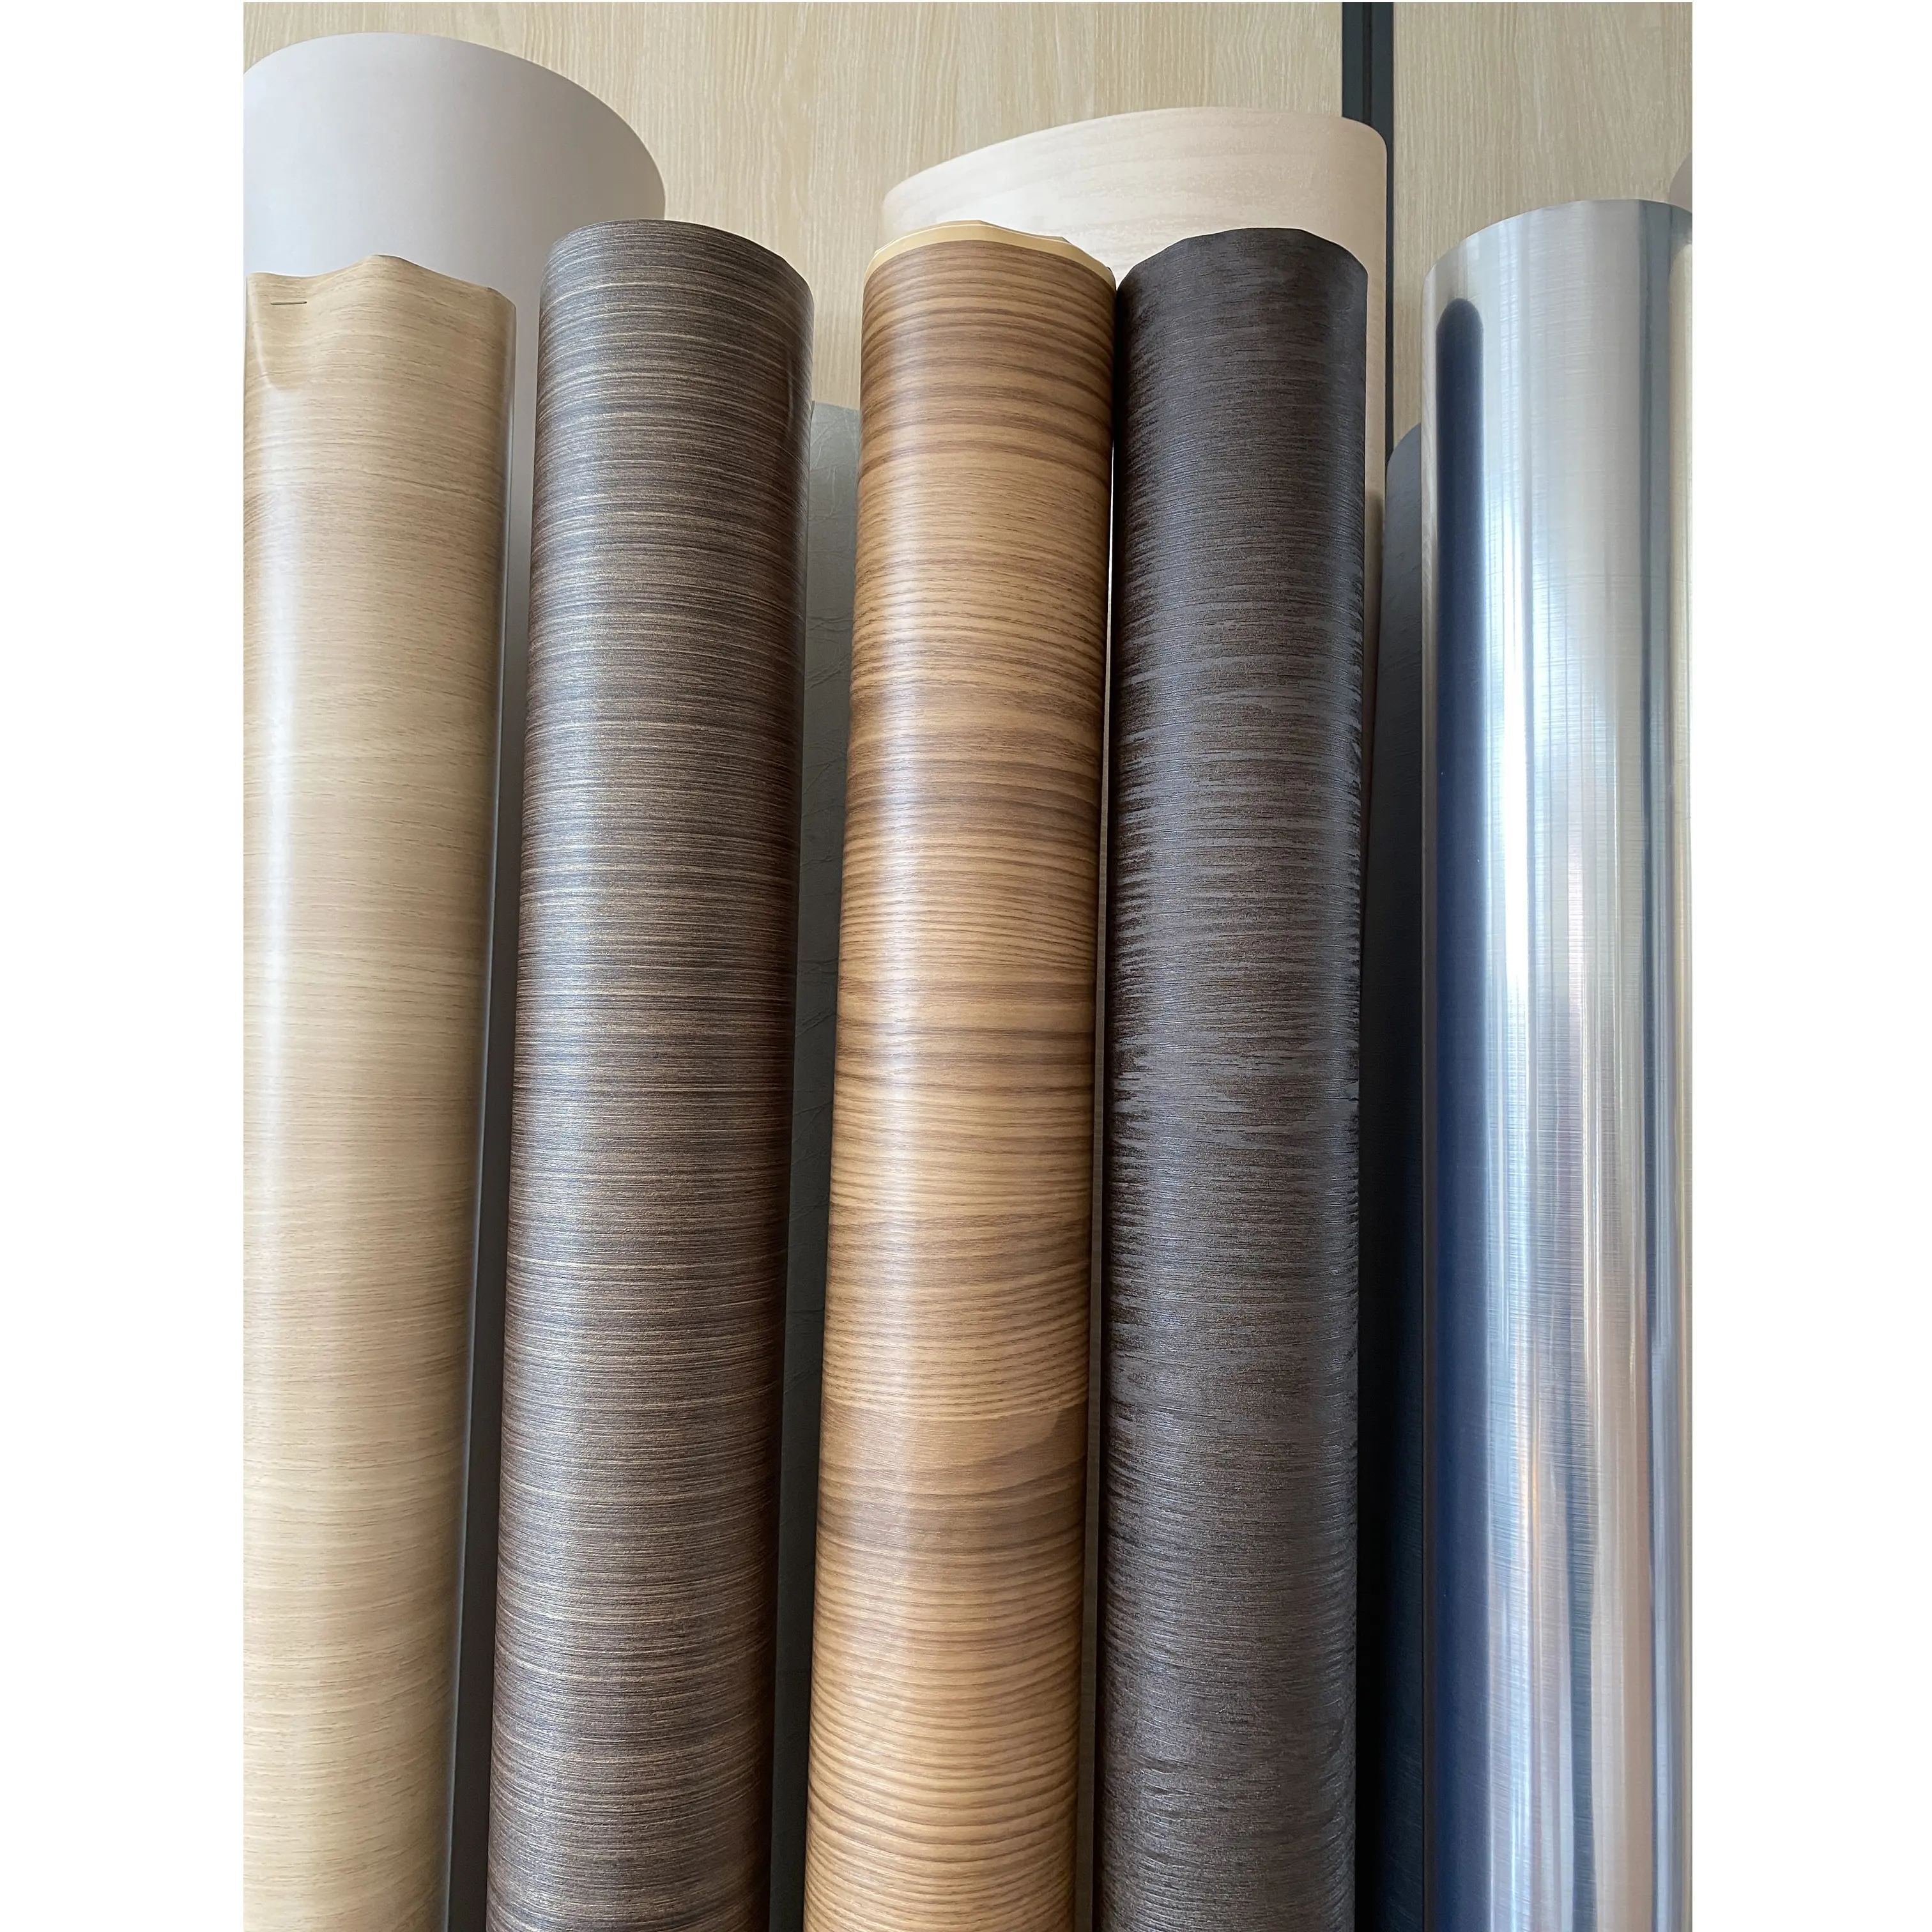 Película decorativa de PVC en rollo Película de muebles de grano de madera para panel WPC